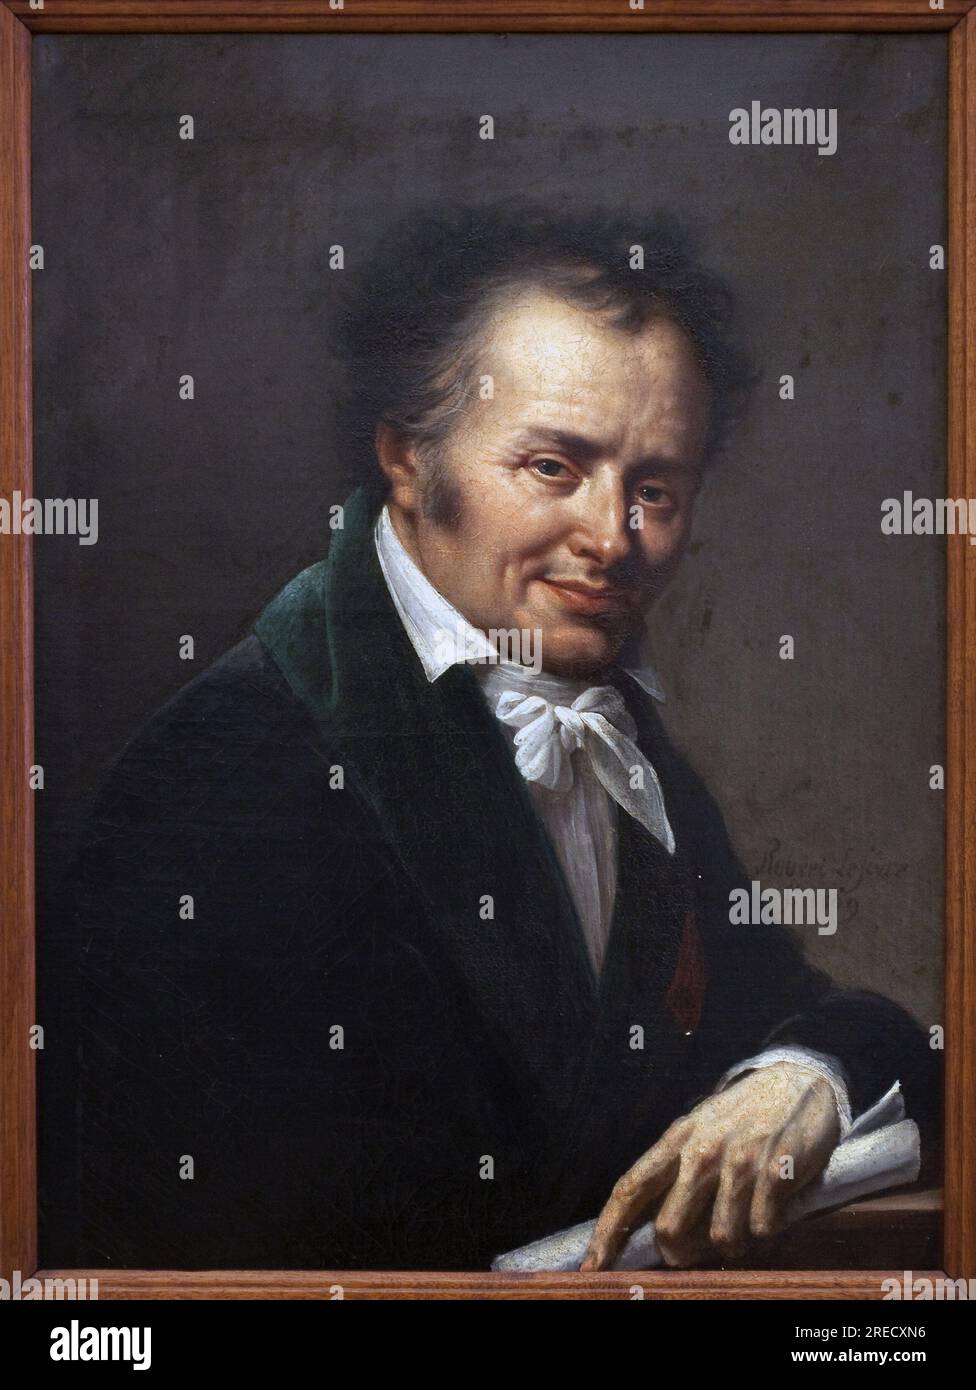 Portrait de Dominique Vivant Denon (1747-1825). Peinture de Roland Lefevre (1755-1830), huile sur toile, 1809. Art francais 19e Siecle. Musée des beaux Arts de Chalons sur Saone. Stockfoto